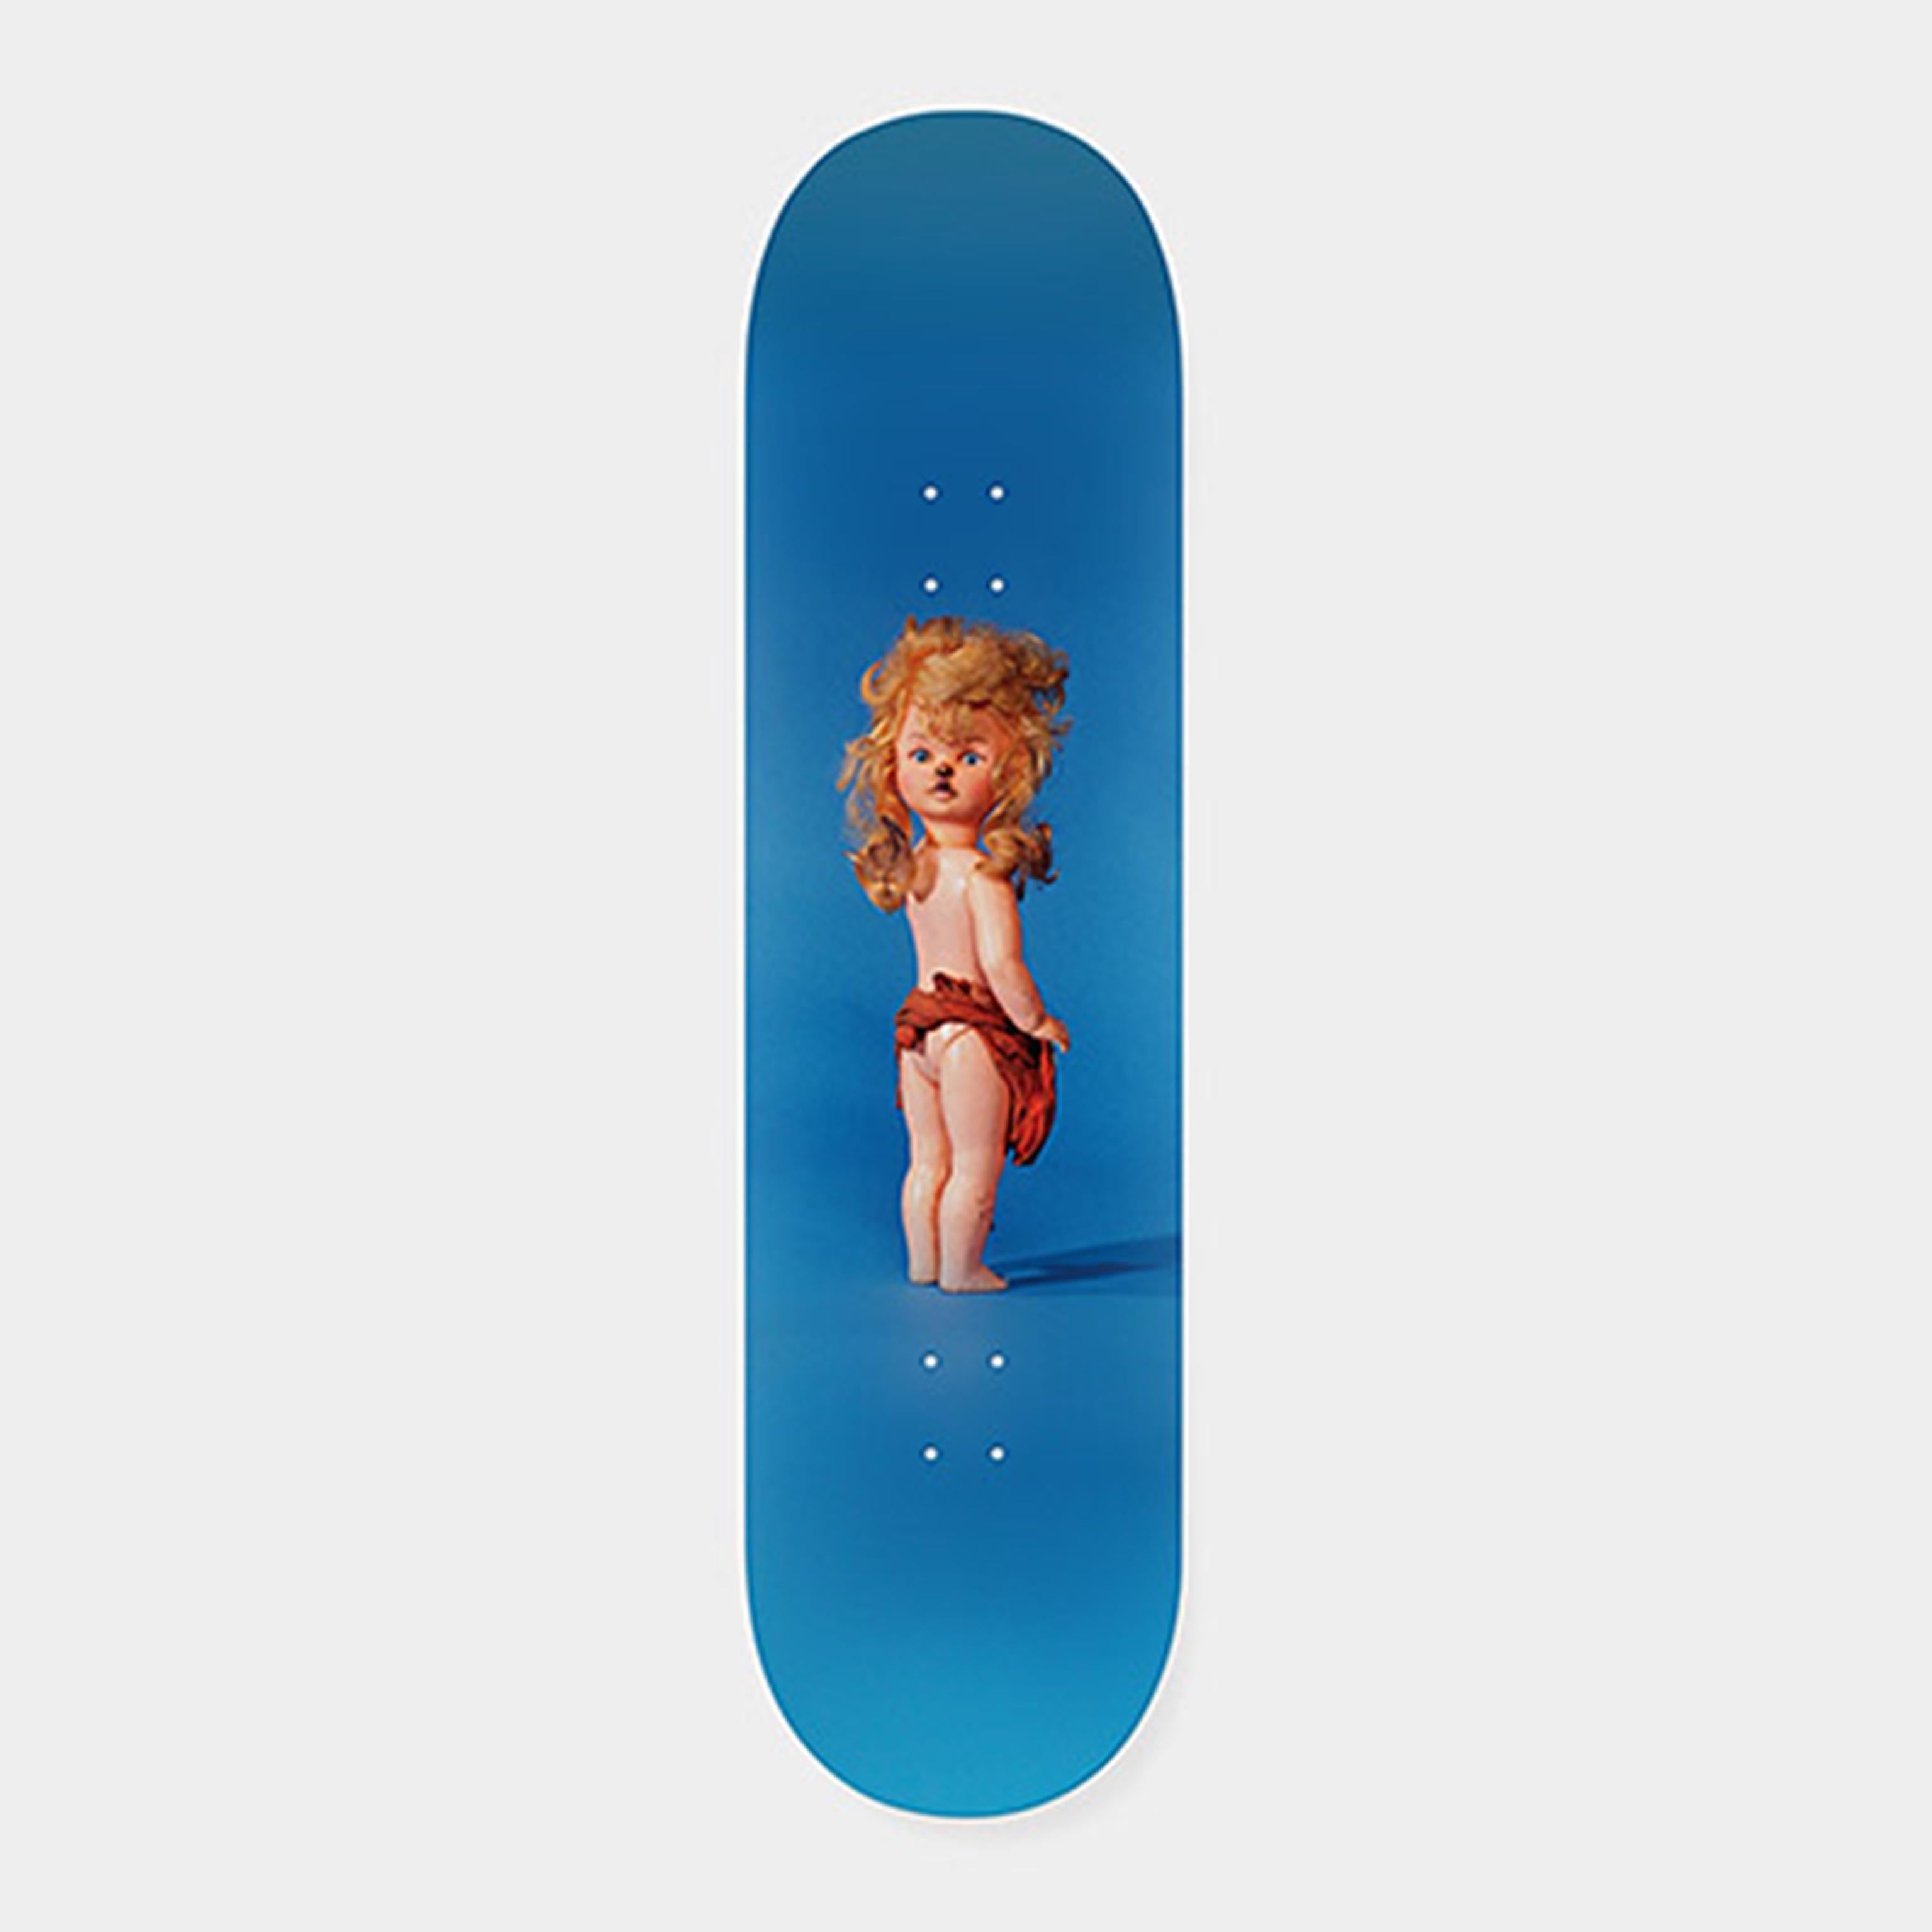 Poupée, édition limitée Skate Deck - Print de Paul McCarthy